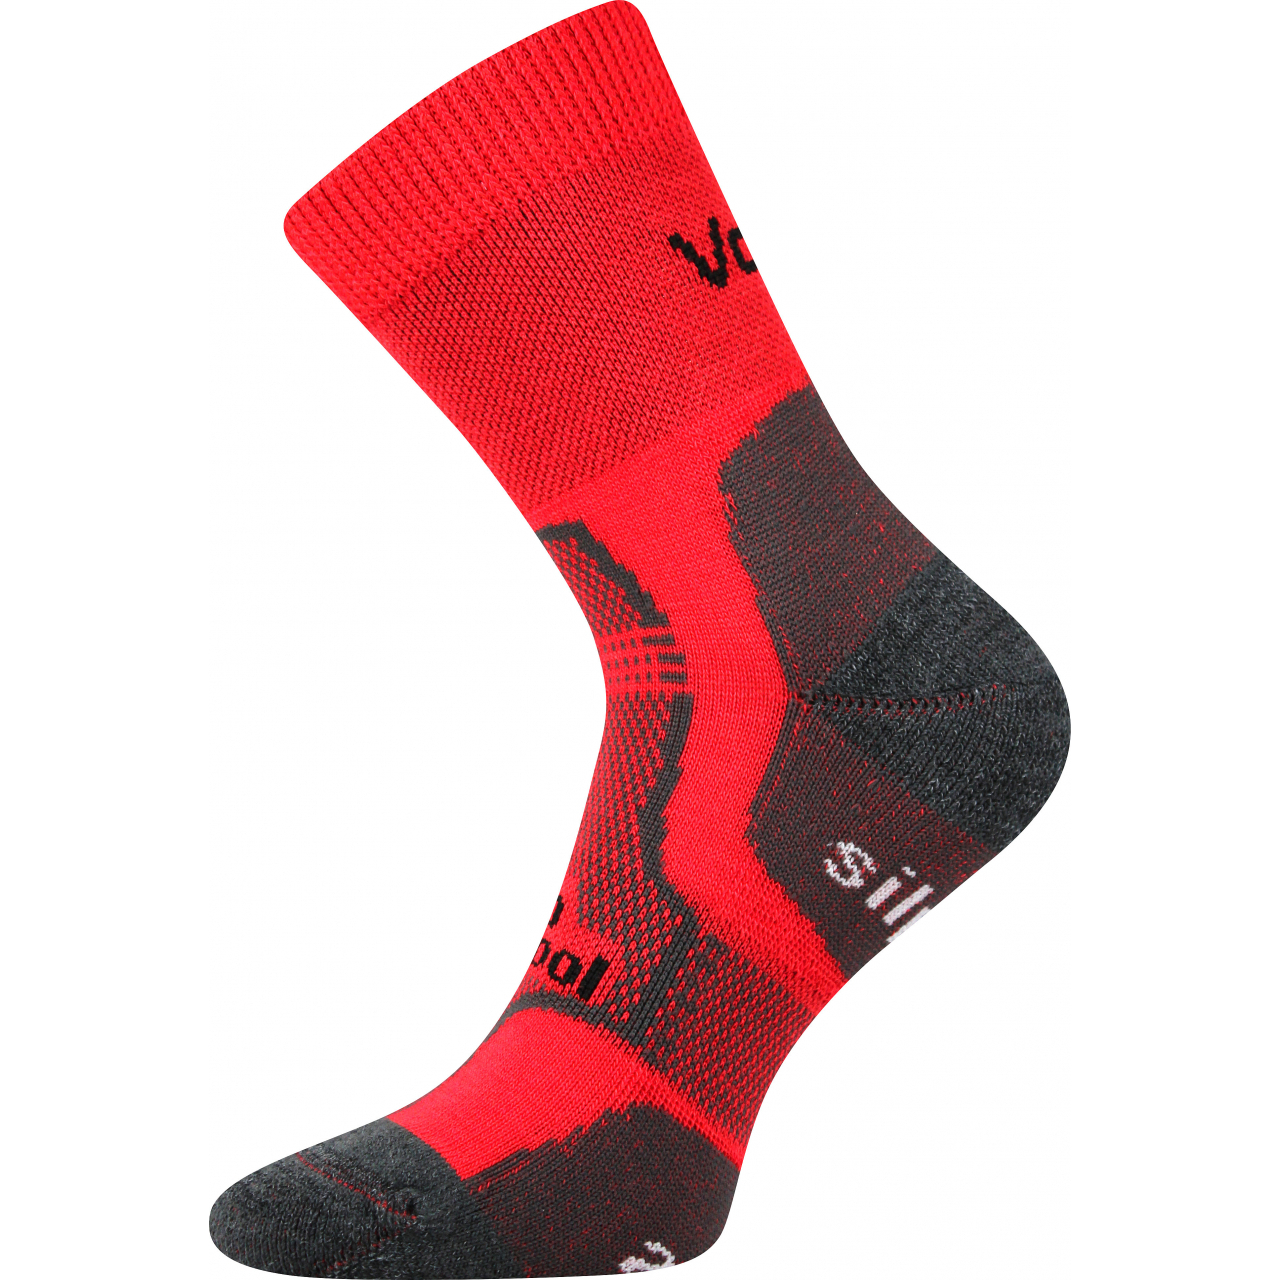 Ponožky unisex zimní Voxx Granit - červené, 35-38